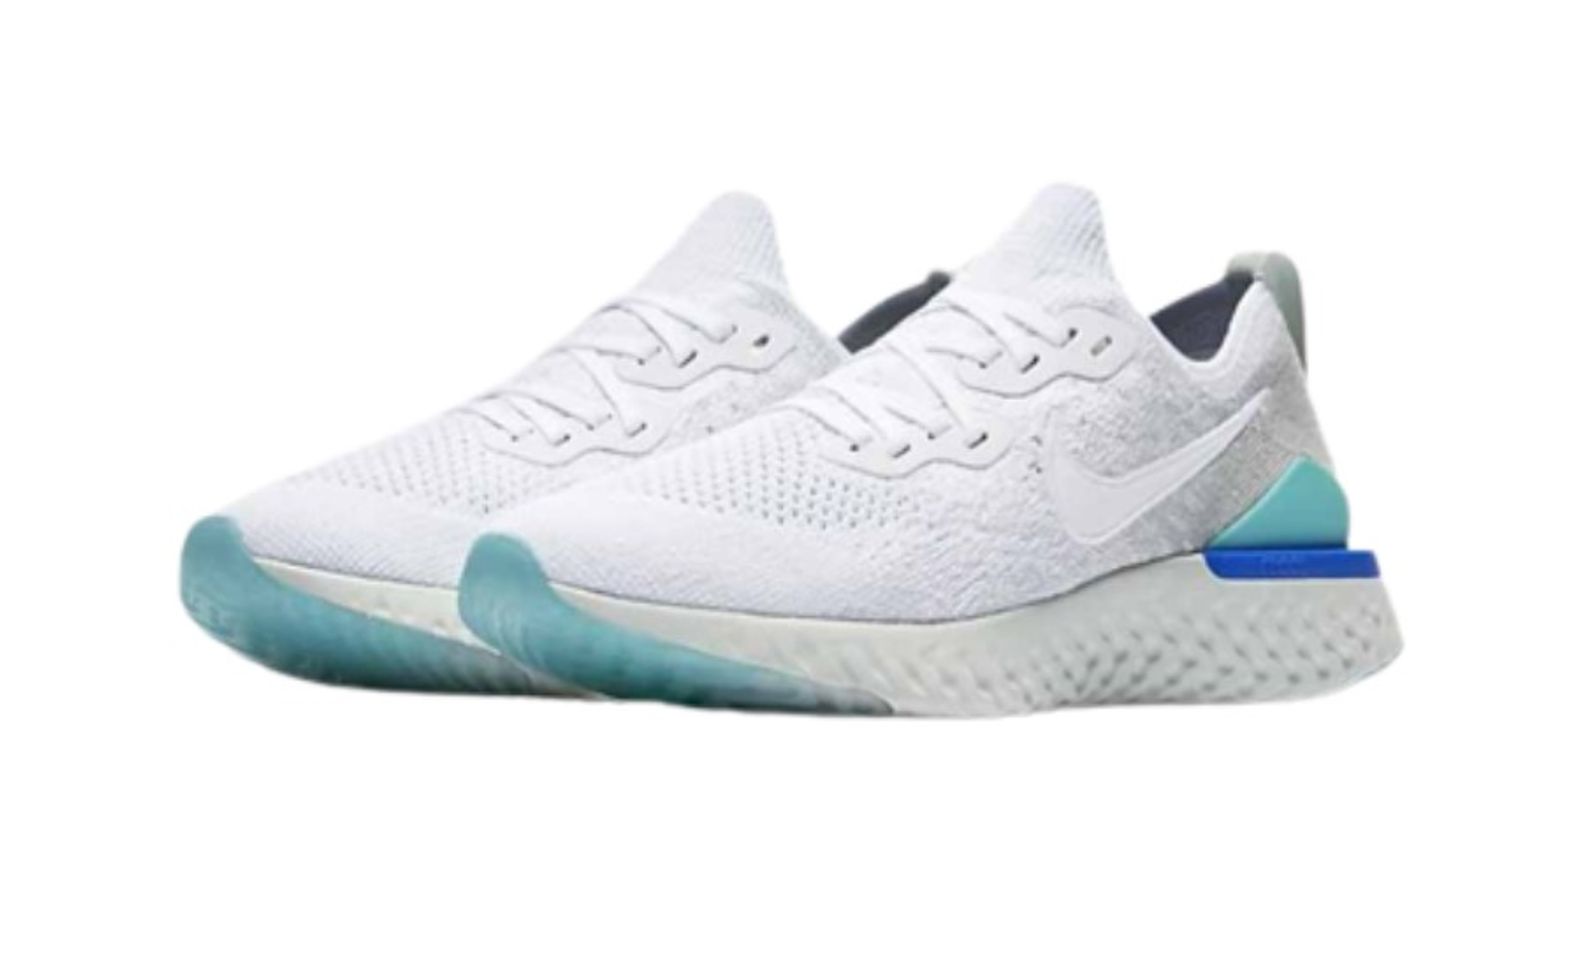 Giày thể thao Nike Epic React Flyknit 2 màu trắng xanh